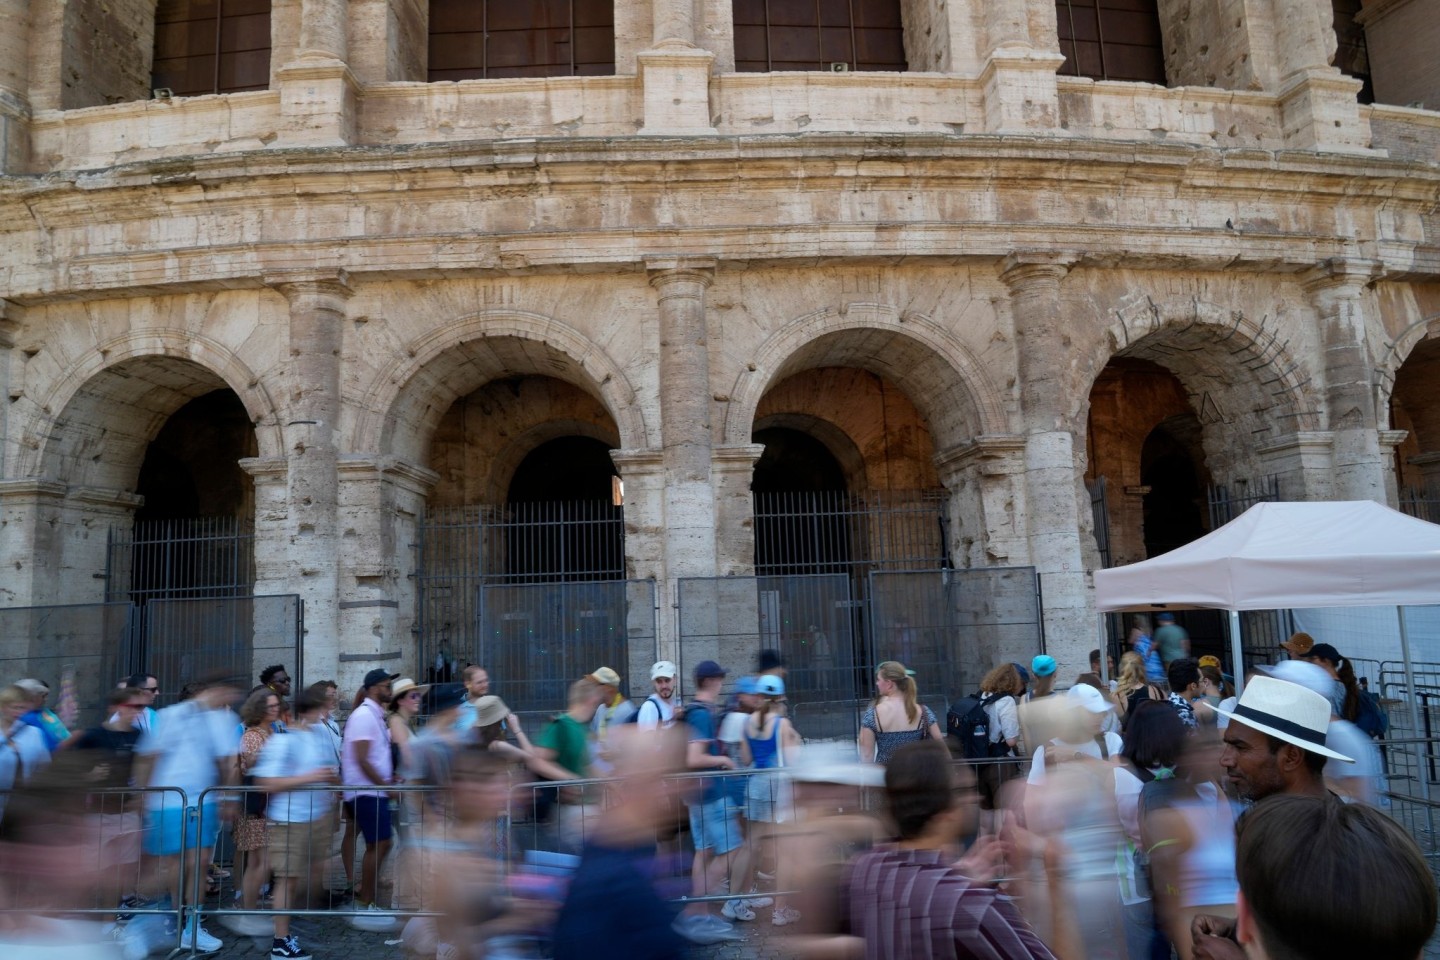 Das rund 2000 Jahre alte Kolosseum gehört zu den beliebtesten Touristenattraktionen in Italien und gilt als das Symbol Roms.